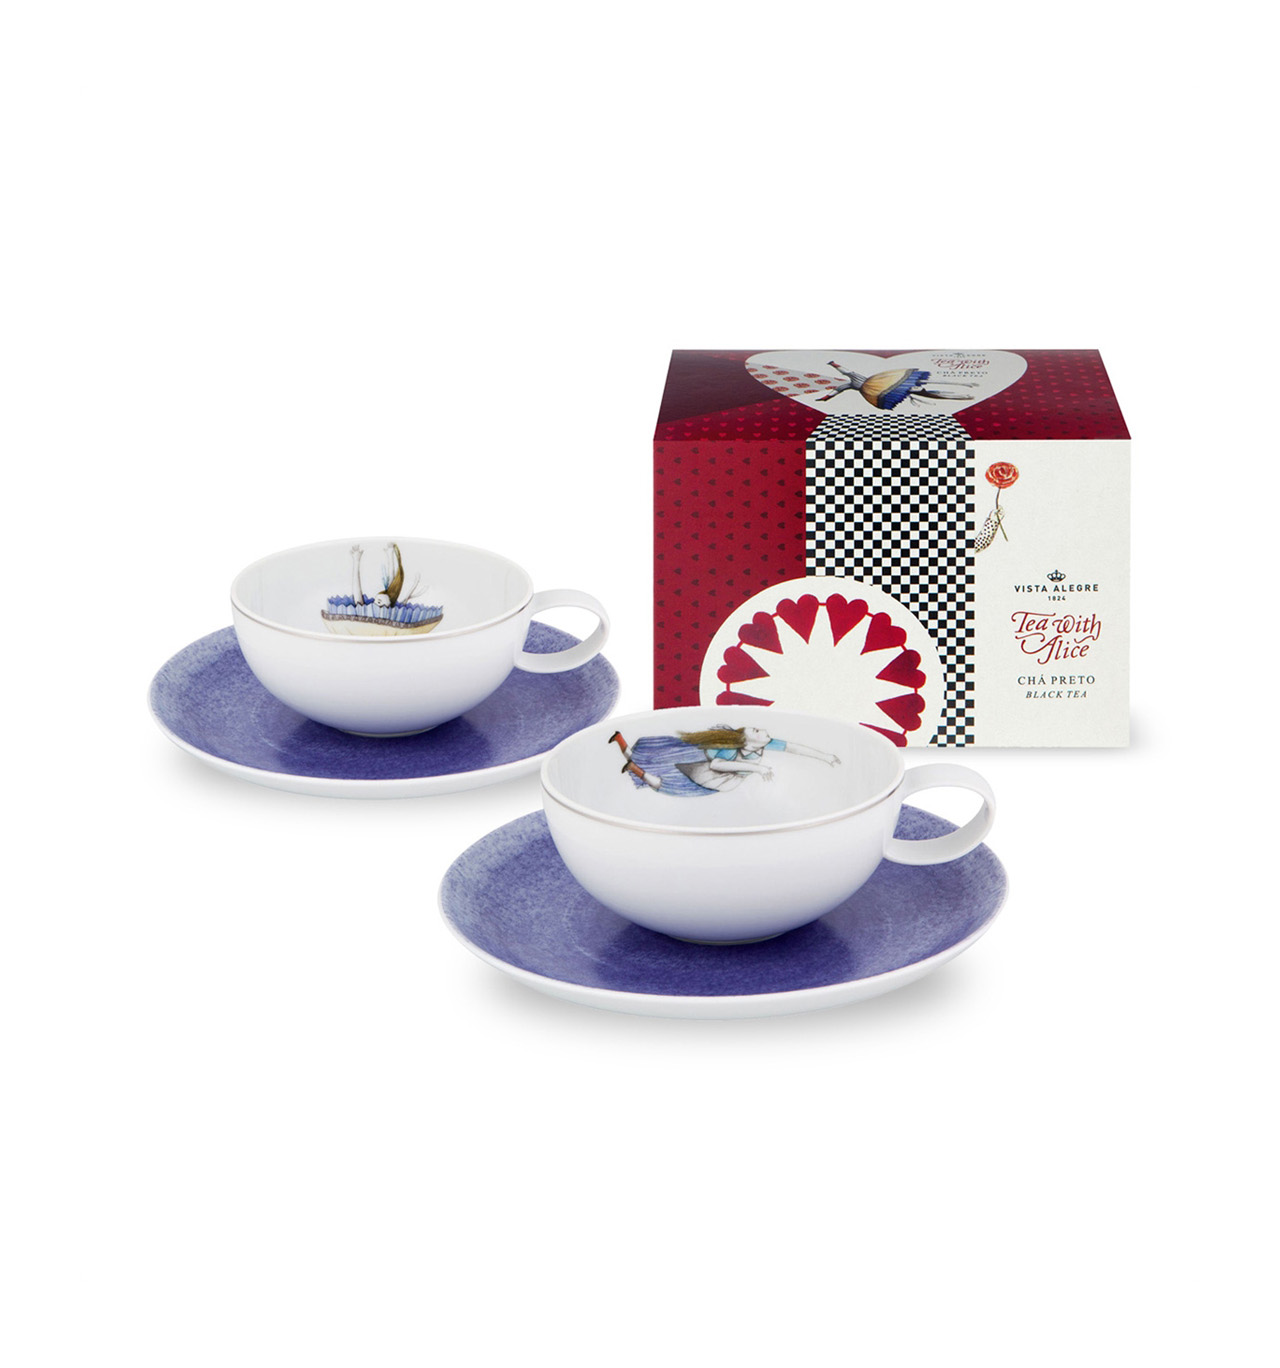 Vista Alegre Collezione Tea with Alice set 2 tazze da tè con piattino